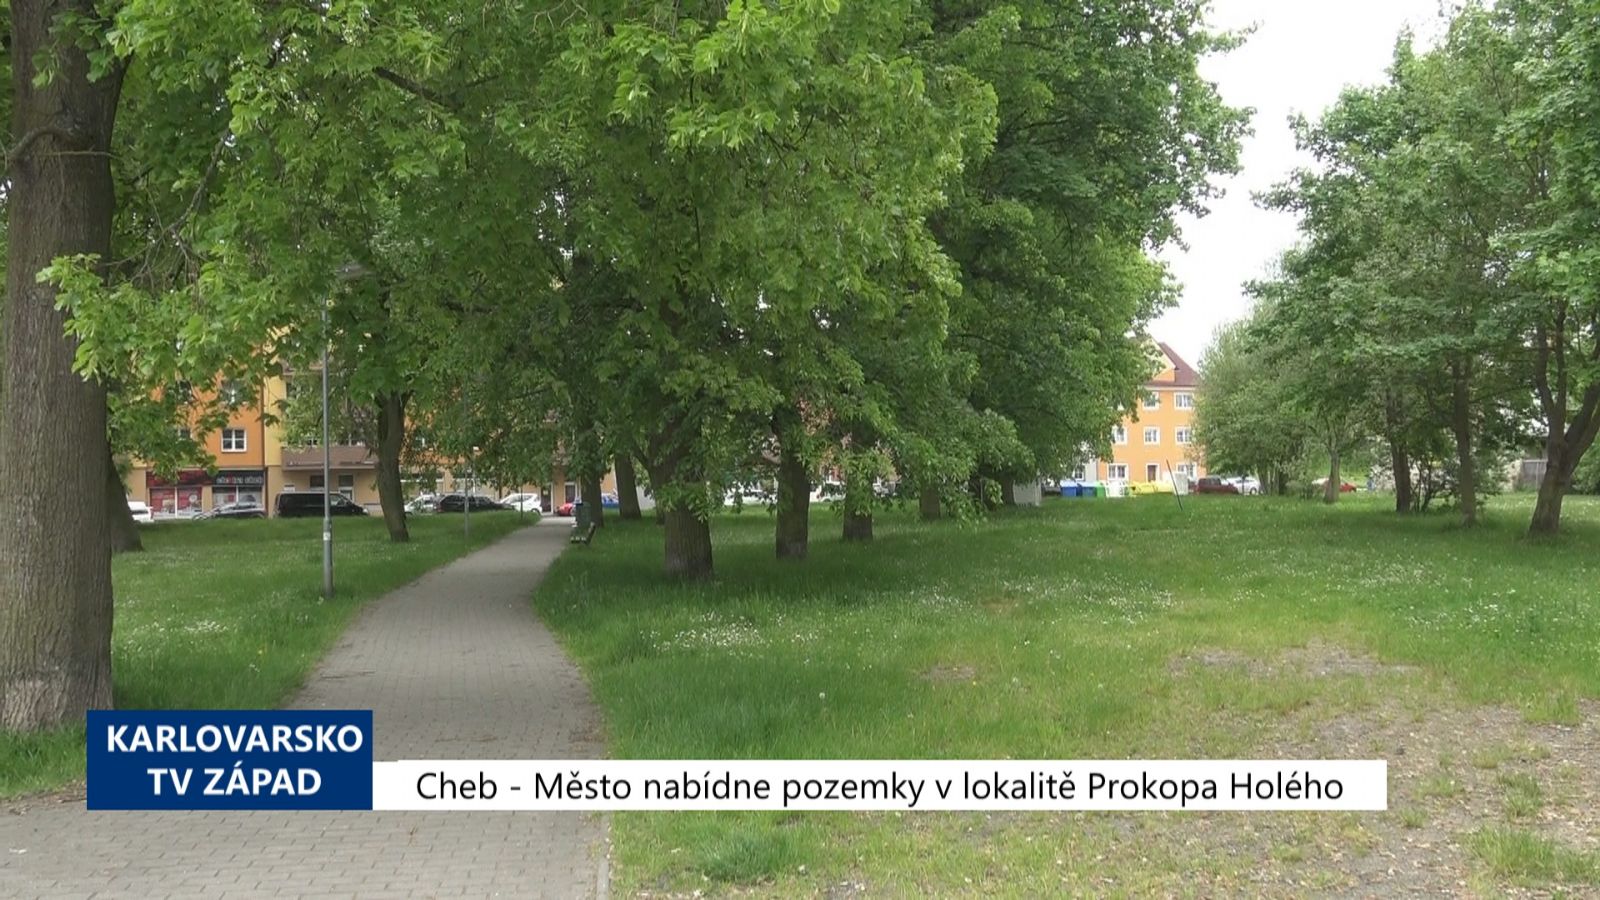 Cheb: Město nabídne pozemky v lokalitě Prokopa Holého (TV Západ)